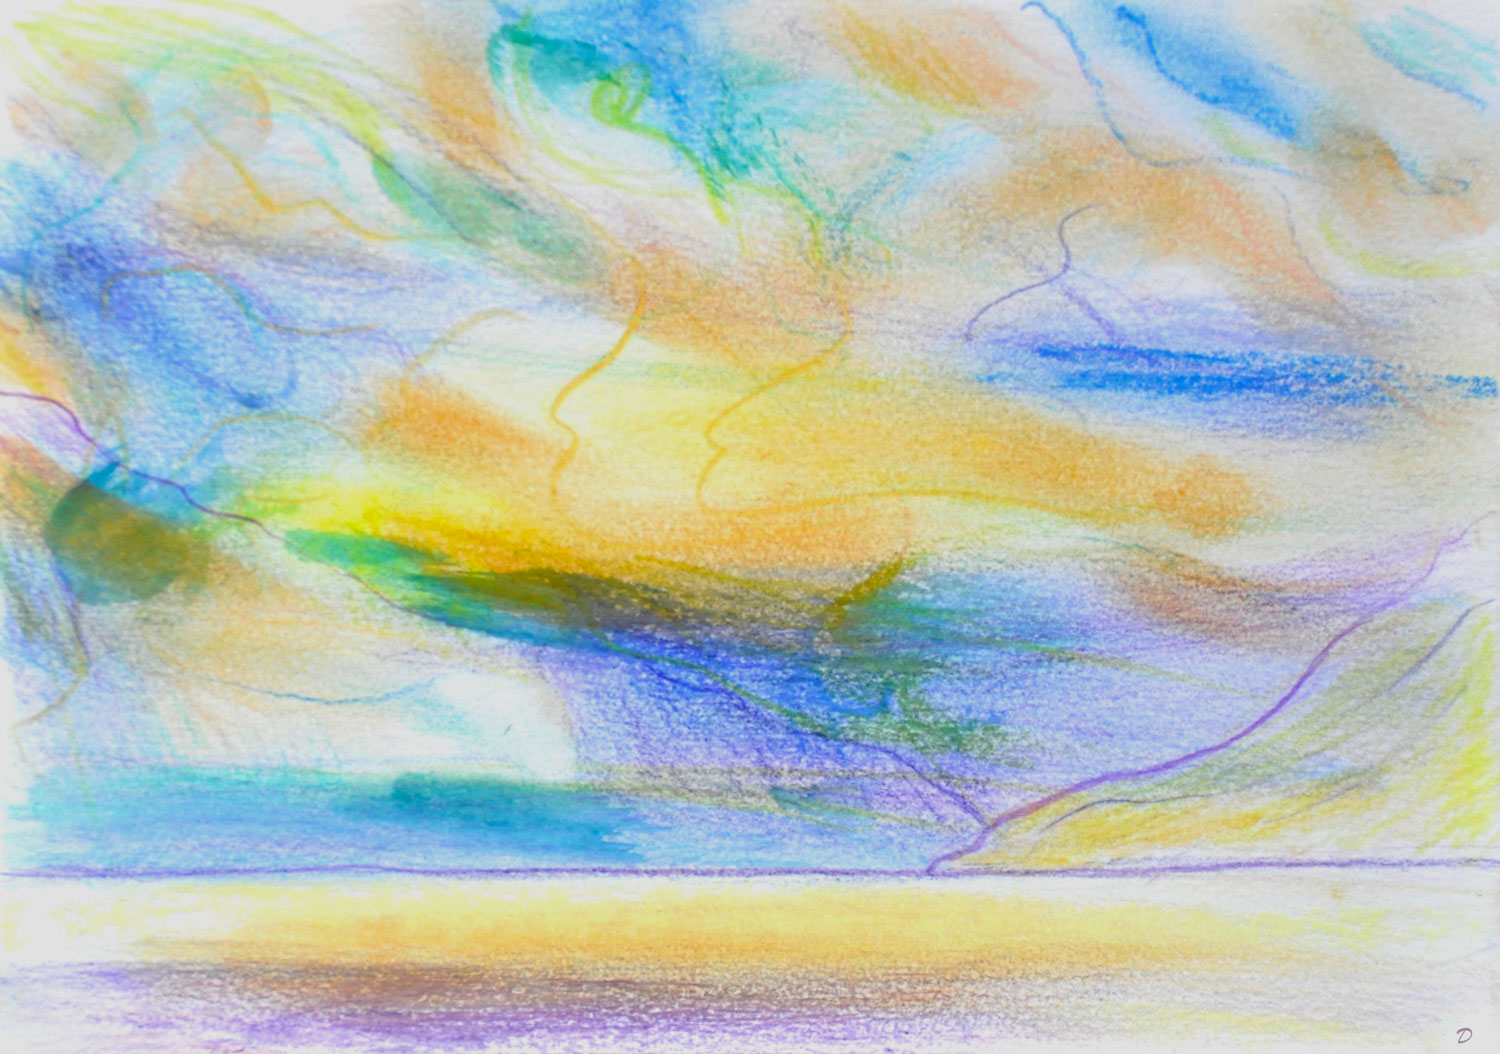 Etude de nuages, 10, St Prex. Crayon, pastel et huile sur papier, 15x21, 2022